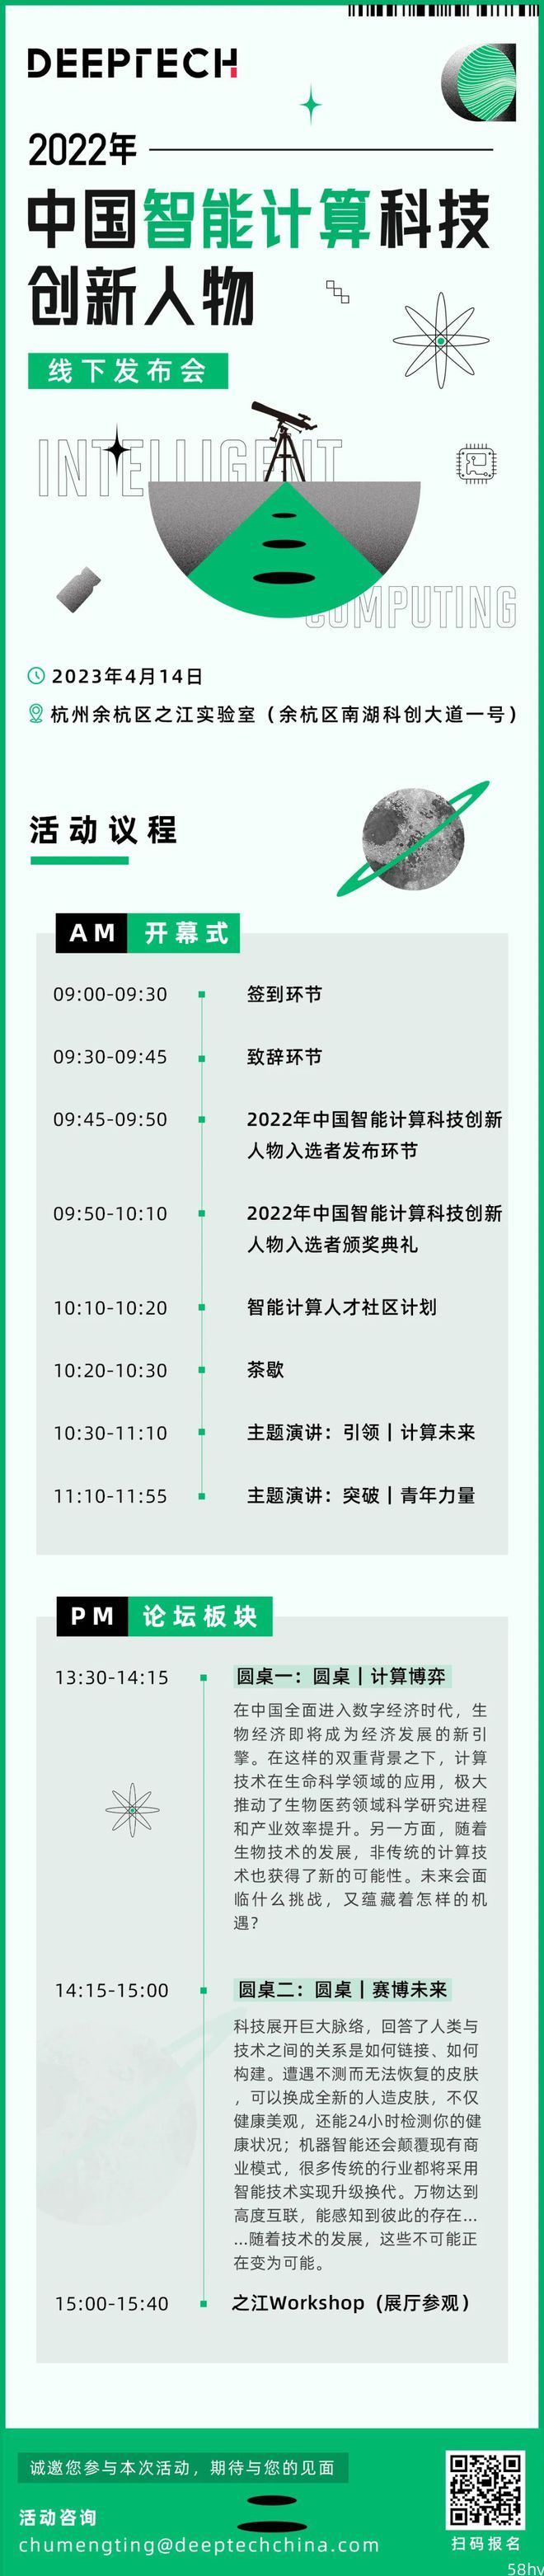 抢占生成式AI背后的算力高地，中国智能计算科技创新人物即将于4月14日正式发布！